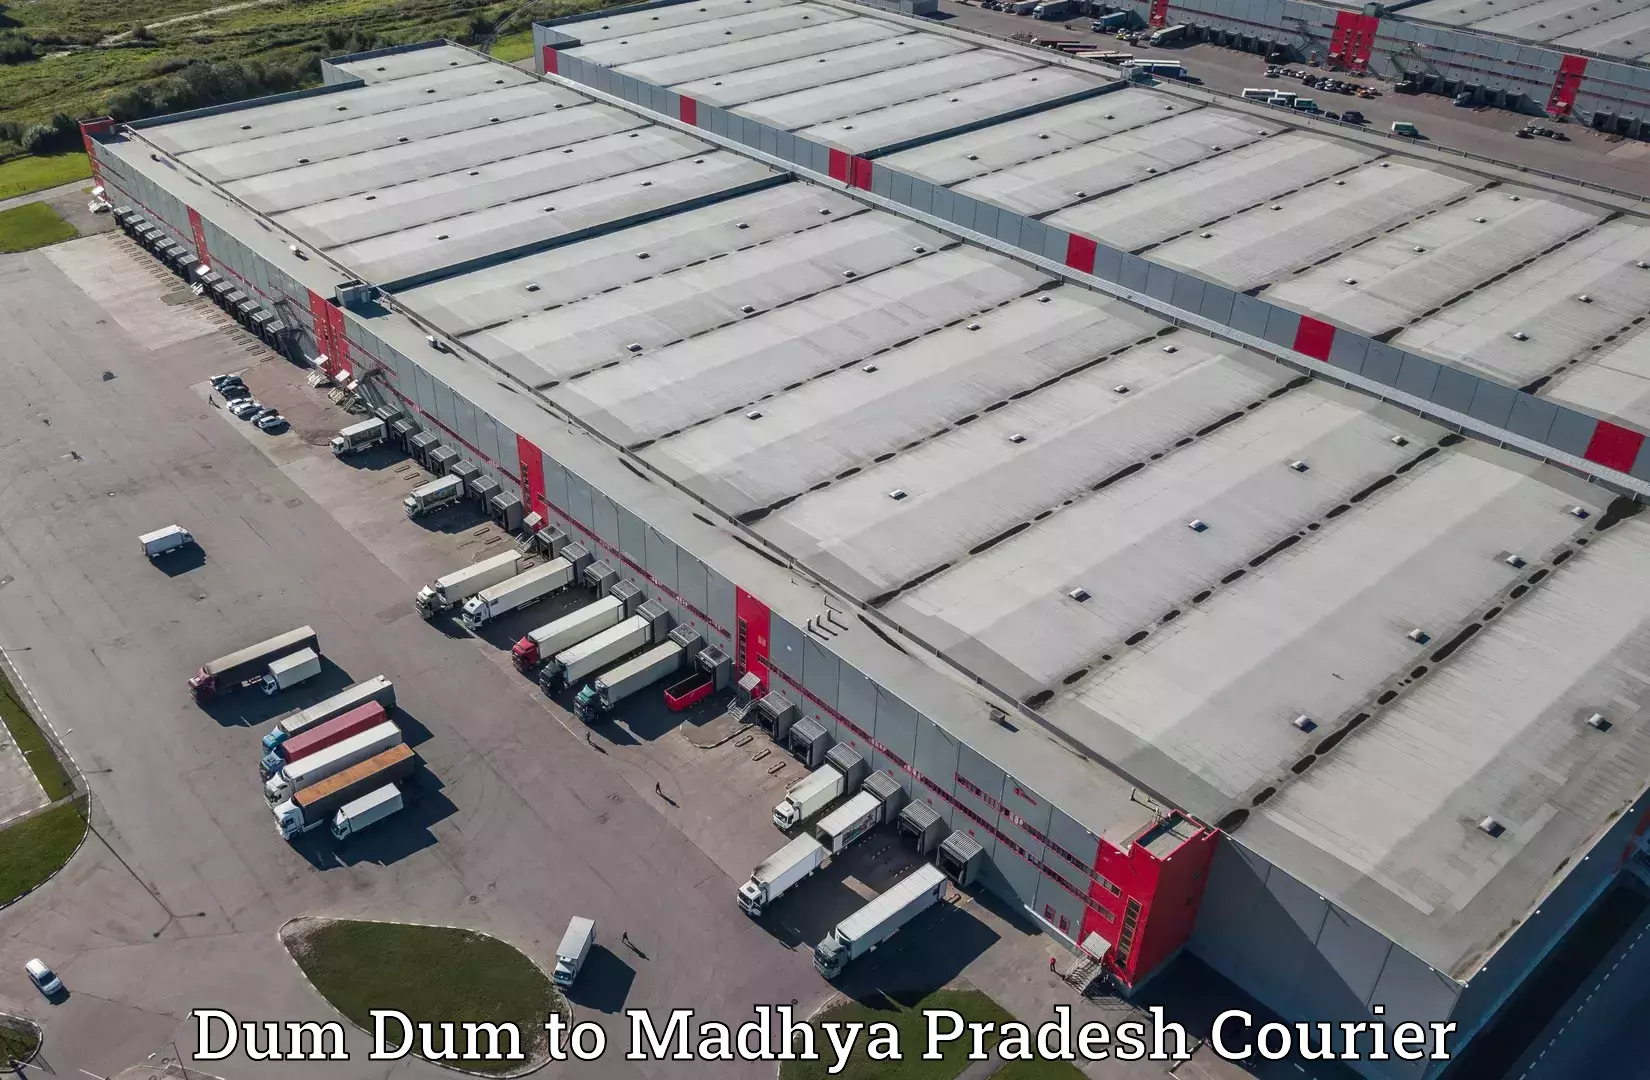 Full-service courier options Dum Dum to Madhya Pradesh